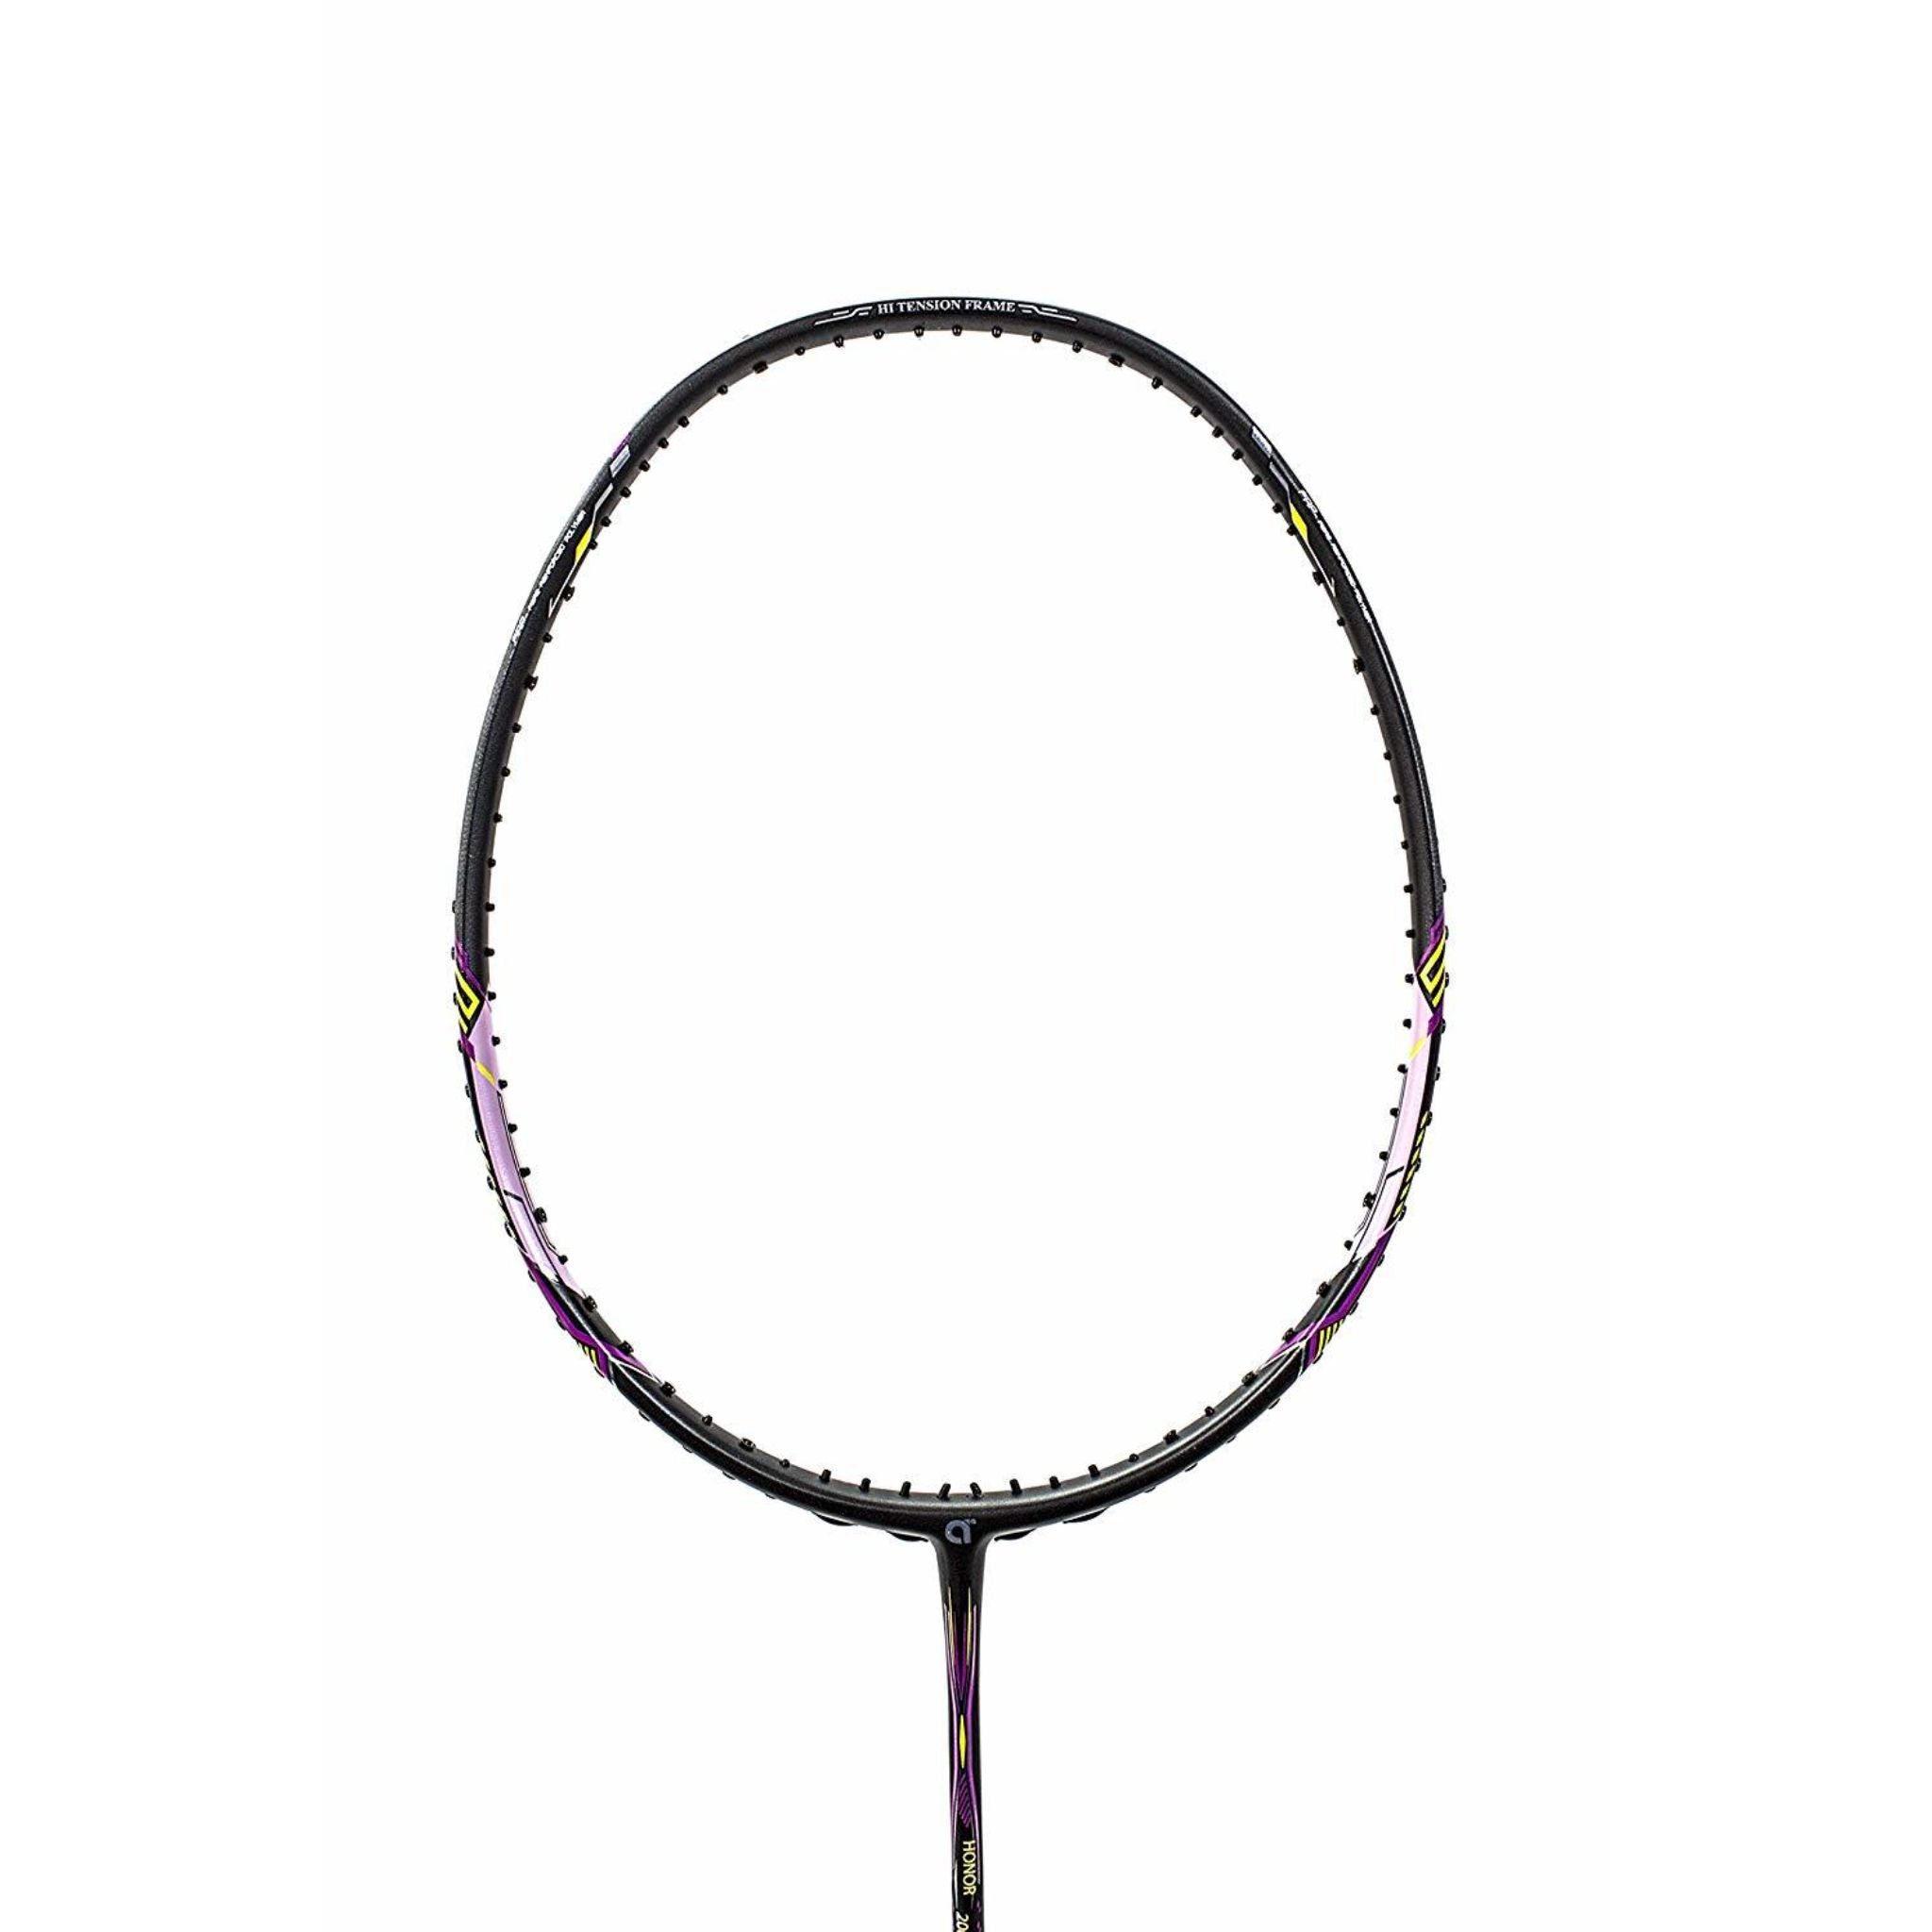 APACS Honor 200 Badminton Racket